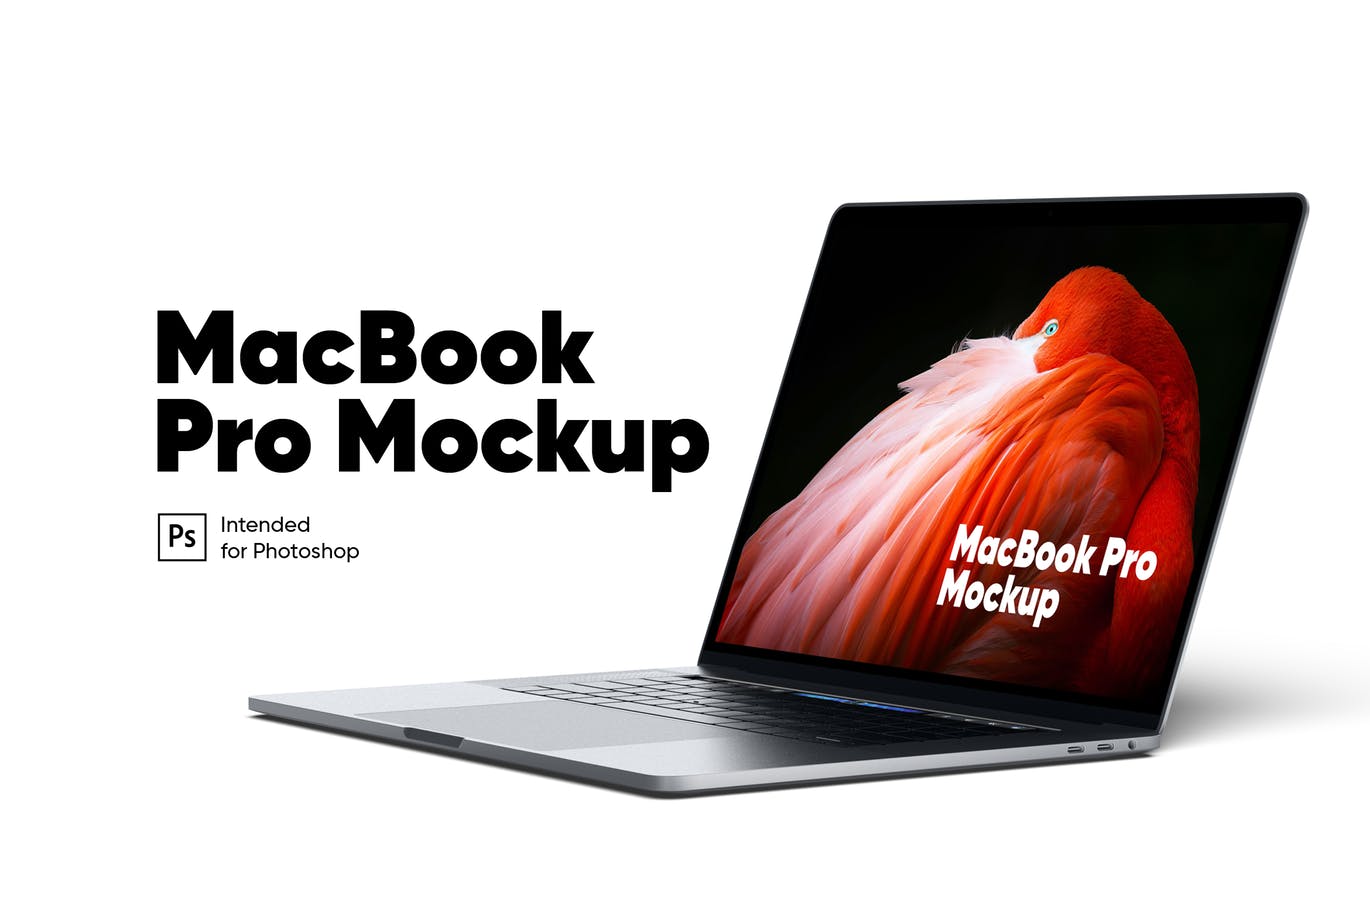 MacBook Pro笔记本电脑视网膜屏演示素材中国精选样机 MacBook Pro Mockup插图